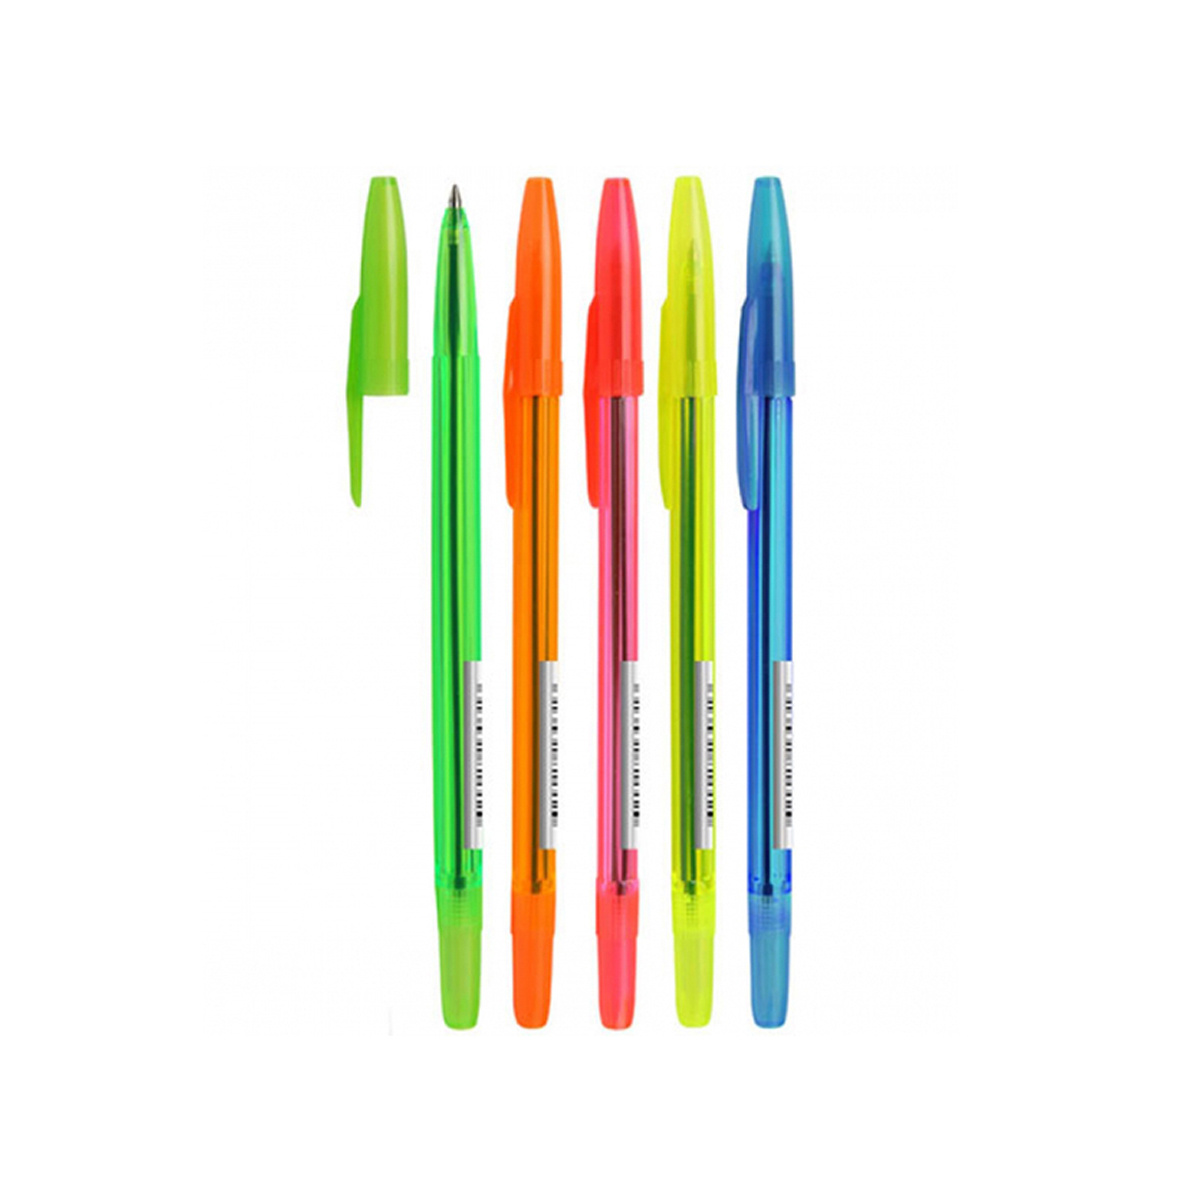 Ручка с прозрачным корпусом. Ручка шариковая СТАММ "511 Neon" синяя, 1,0мм, прозрачный корпус, ассорти. Ручка СТАММ "511 Neon" синяя. Ручка шариковая СТАММ 511 синяя рк01. Ручка шариковая СТАММ неон РШ 511.